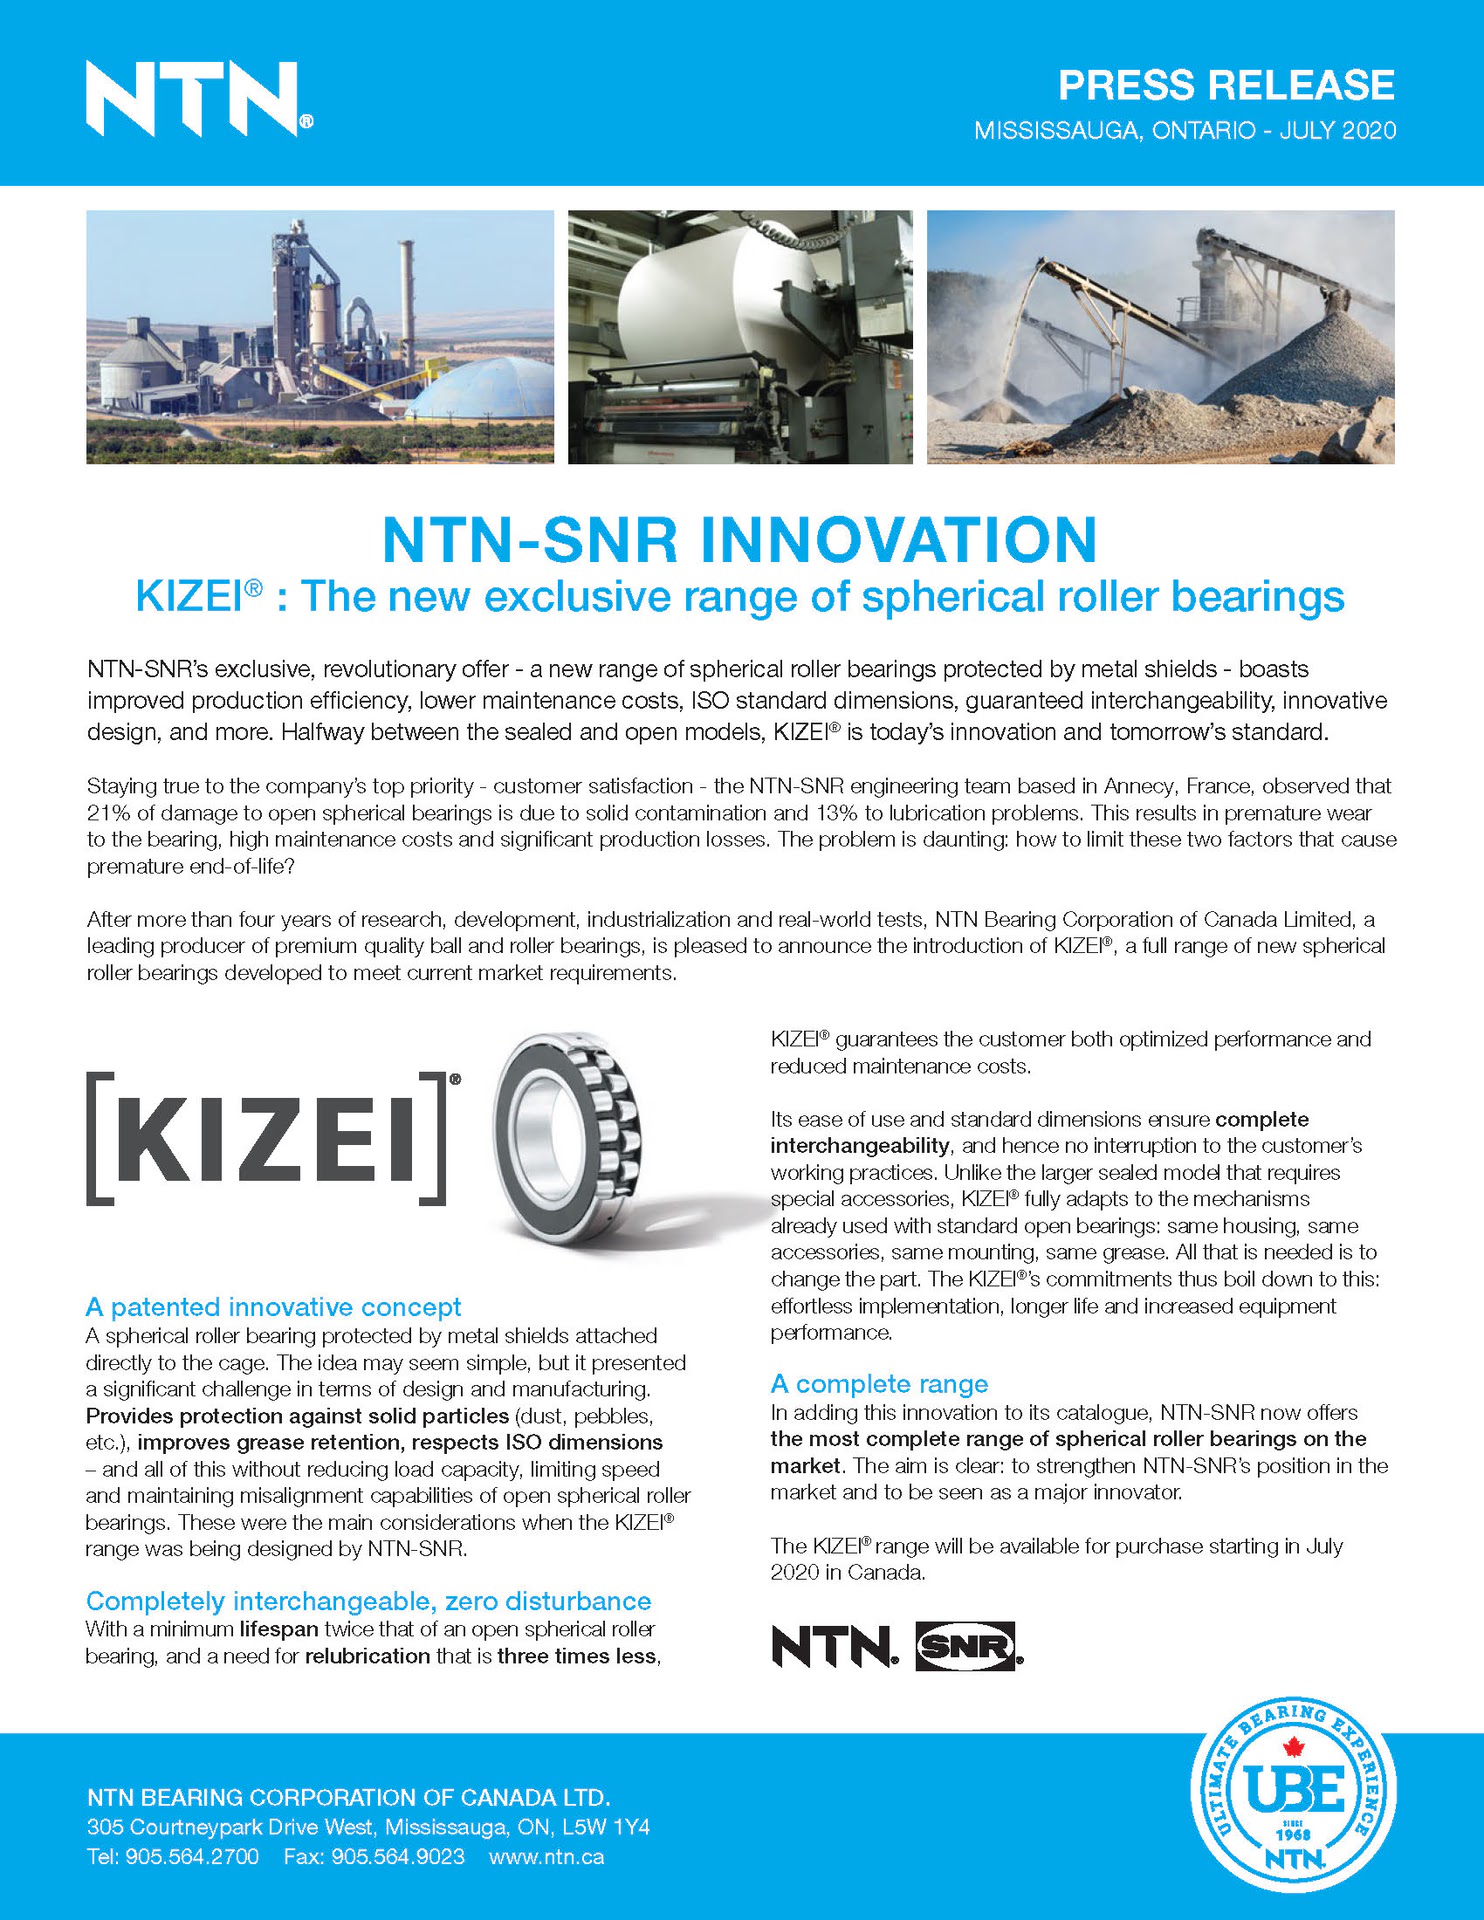 ntn kizei spherical roller bearing press release en page 1